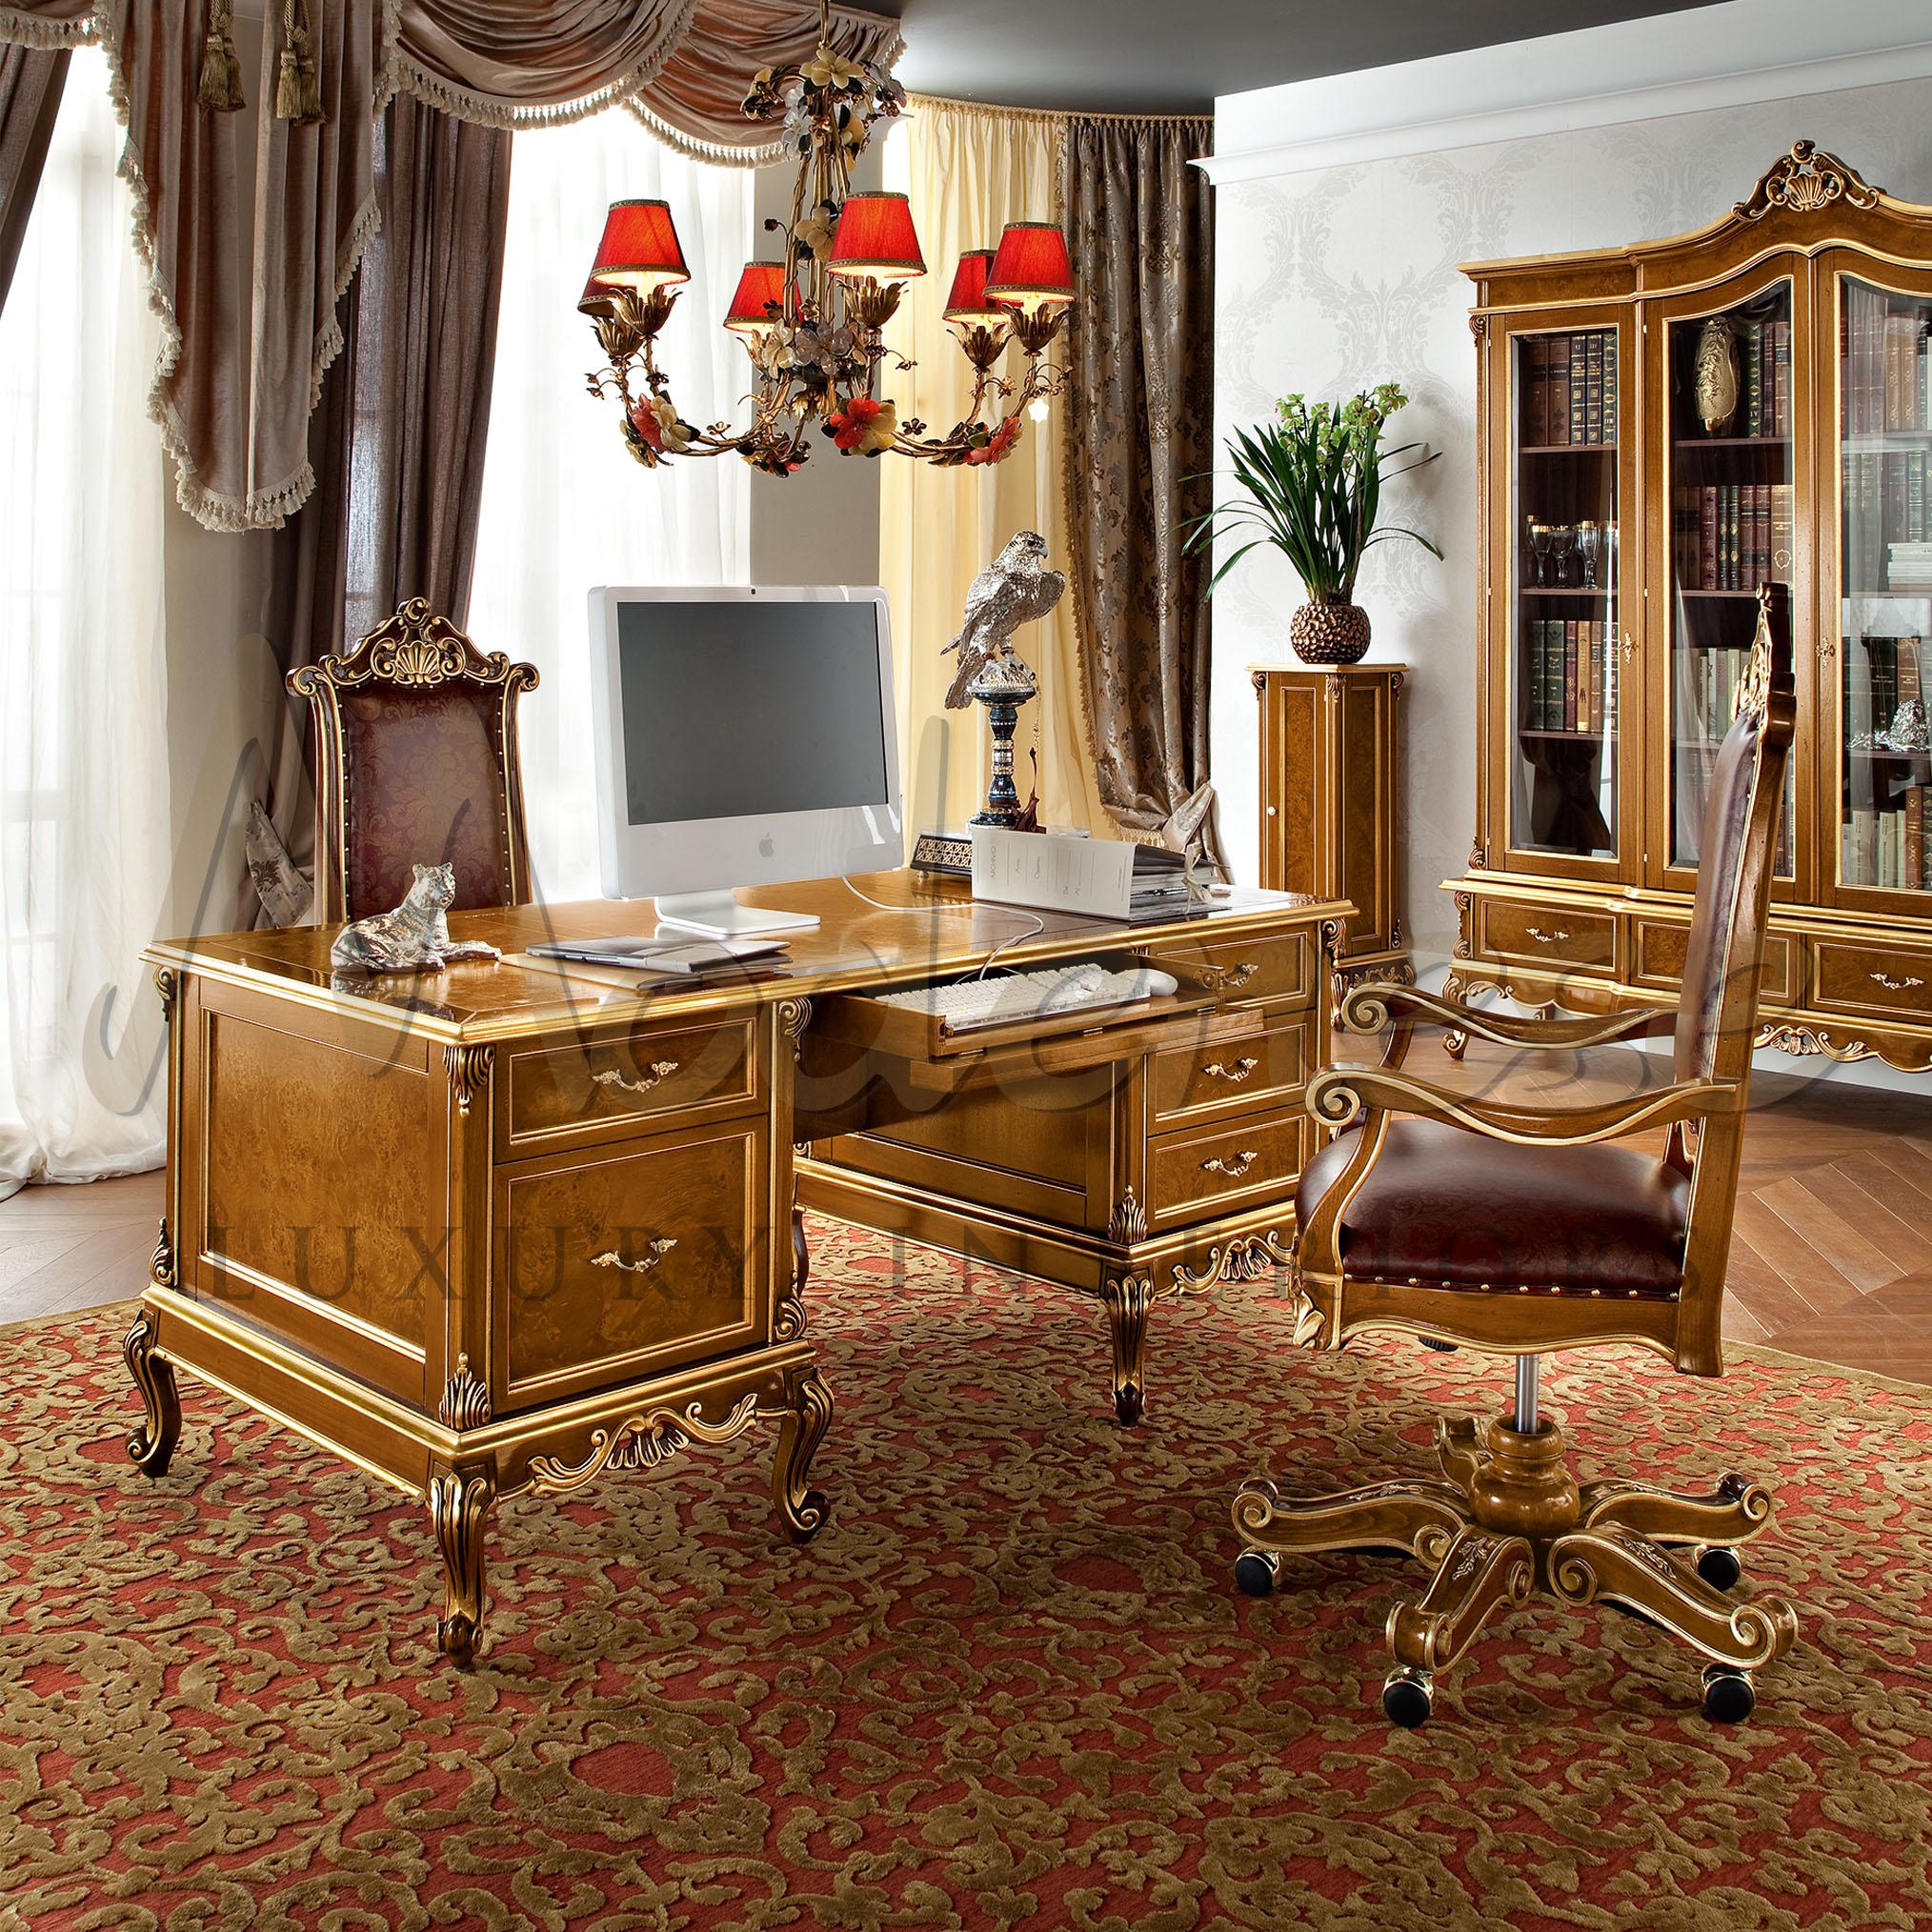 Décorez votre bureau de PDG avec un bureau ouvert baroque italien haut de gamme du producteur artisanal Modenese Luxury Interiors. Ce bureau présidentiel en bois massif est doté d'un plateau à clés avec abattant, de cinq tiroirs spacieux avec